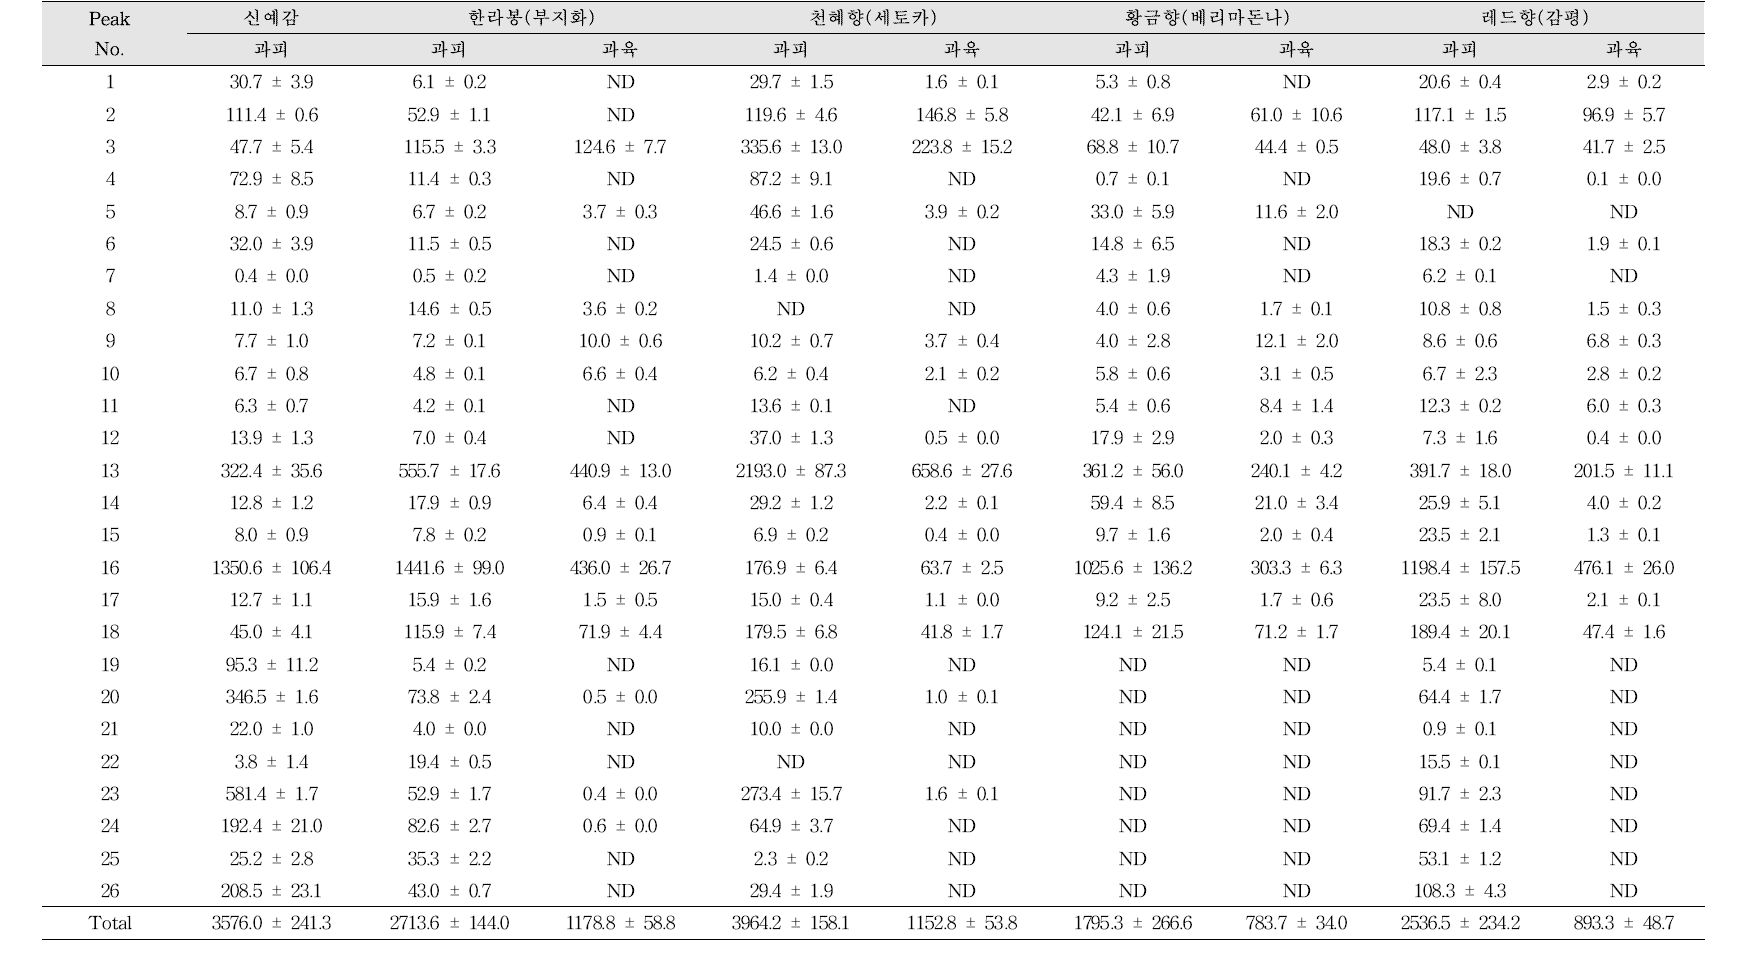 만감류 품종 및 부위별 플라보노이드 함량 비교 (mg/100 g, 건조중량)